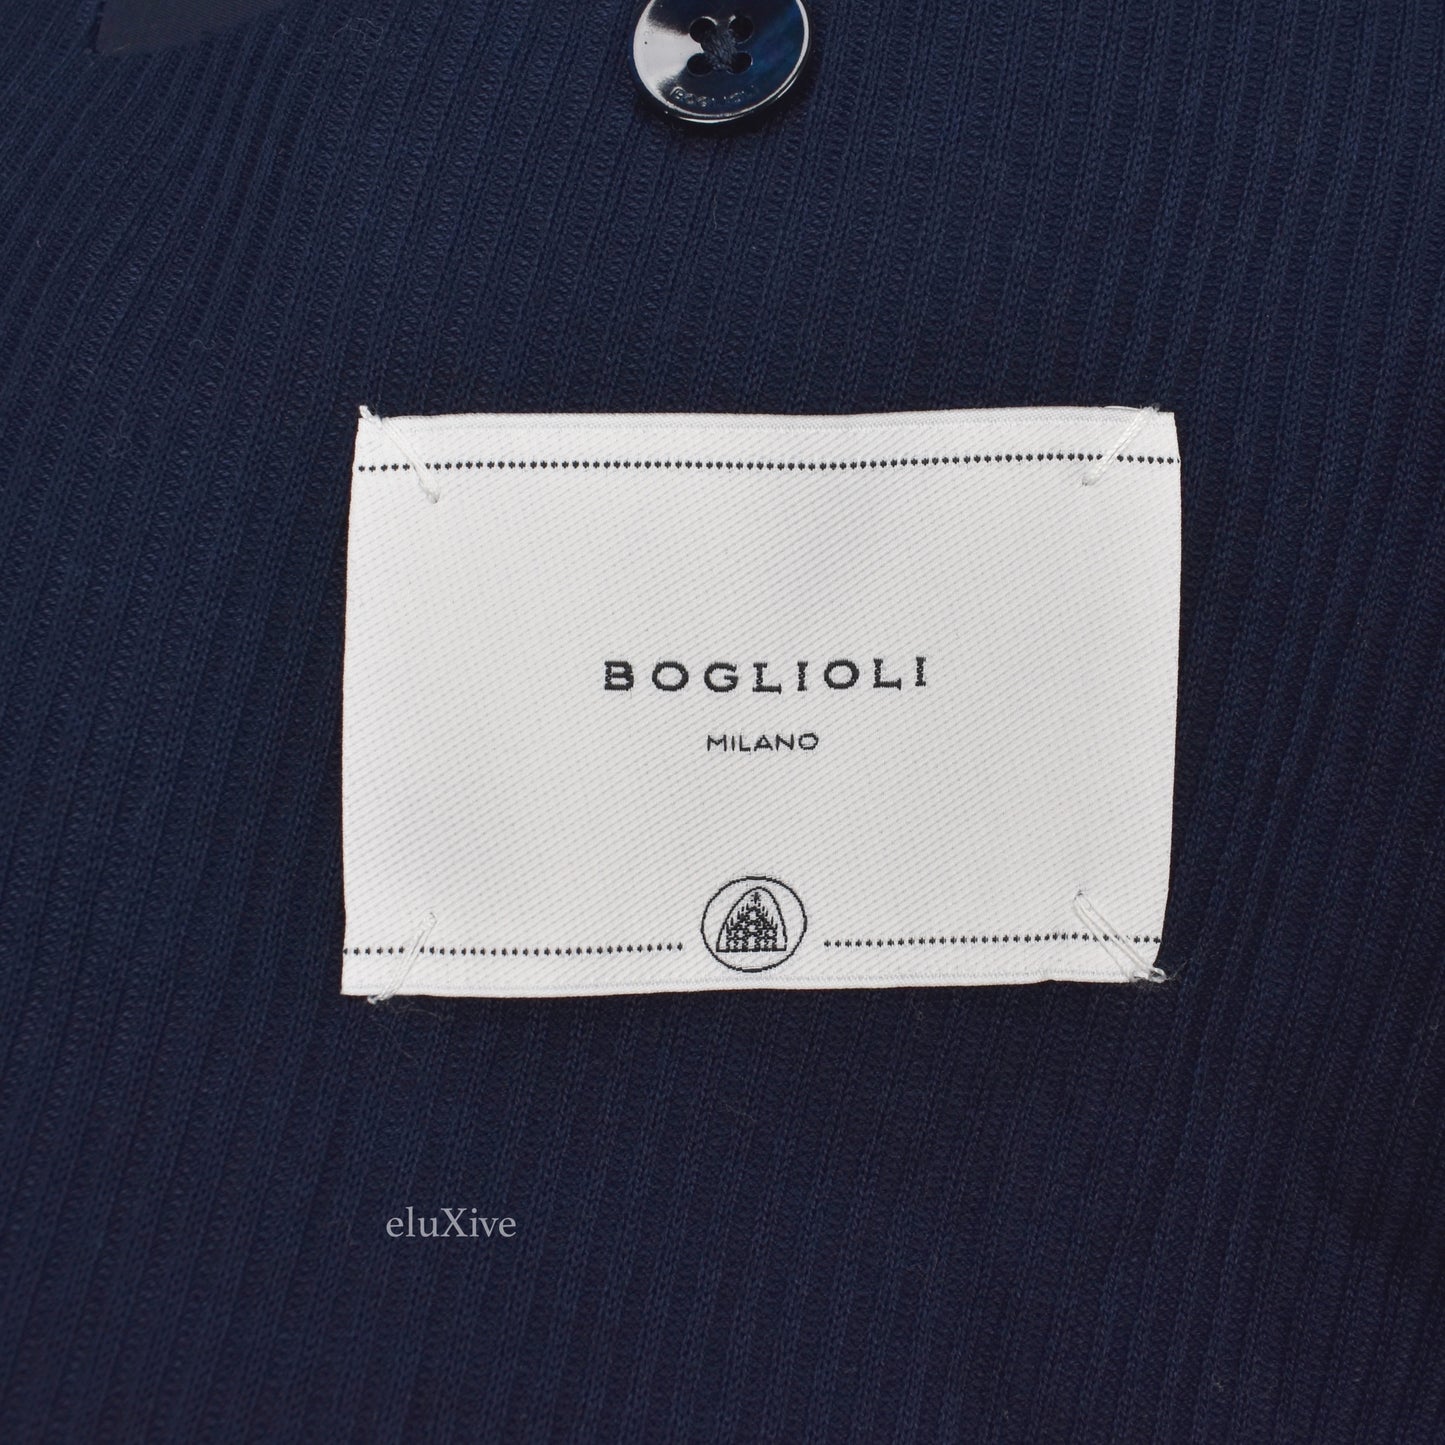 Boglioli - Navy Rib Knit Unlined Cotton Blazer